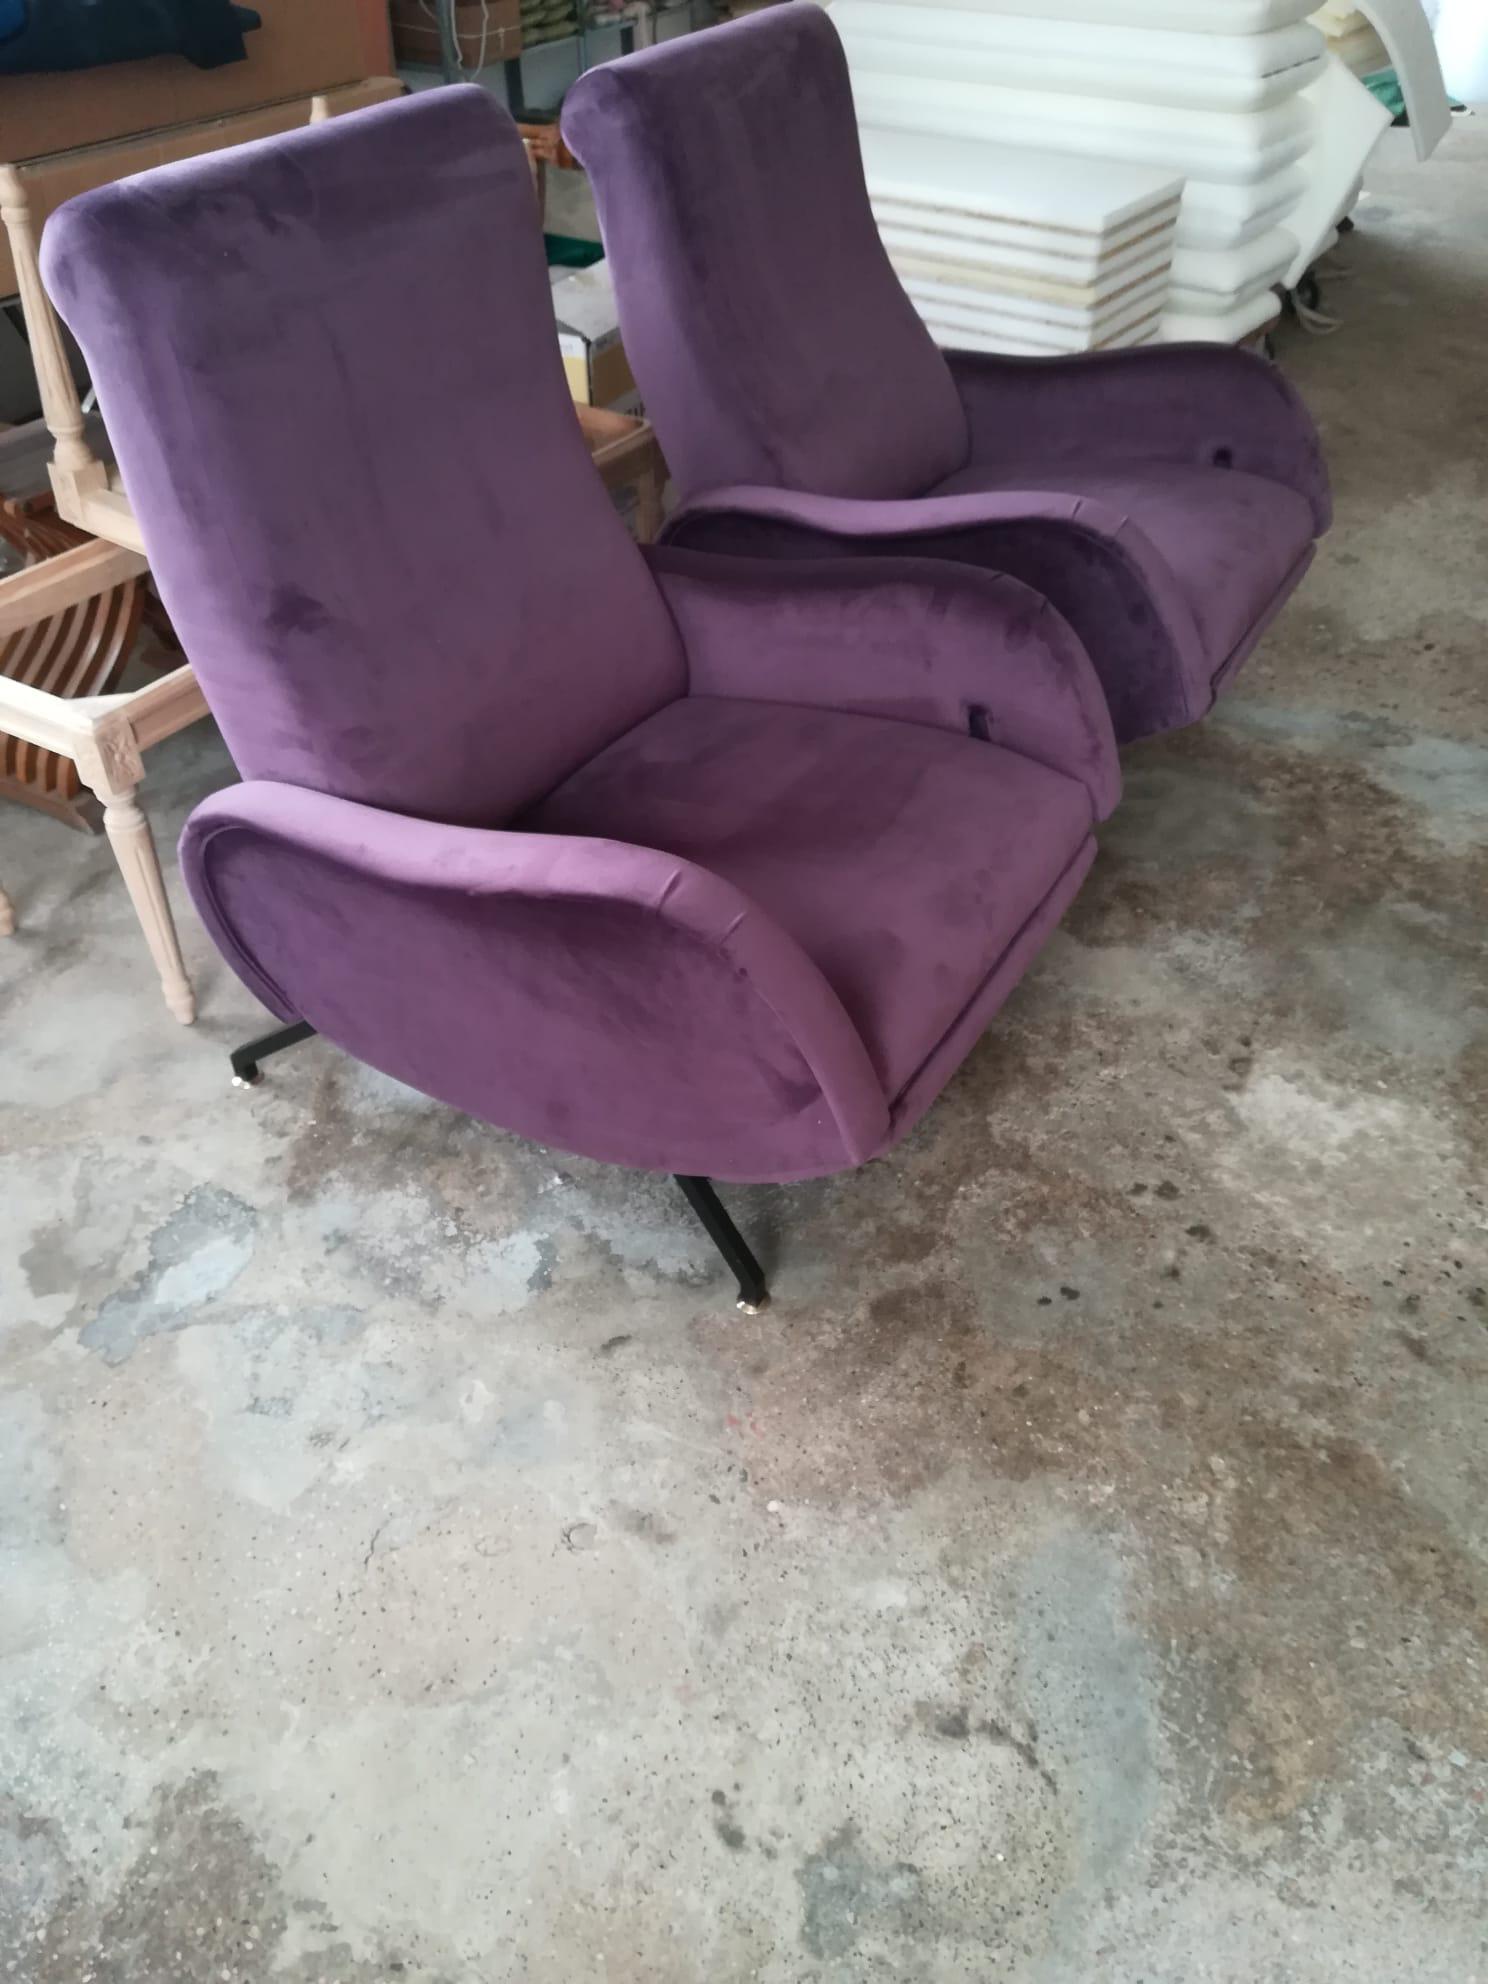 Deux fauteuils inclinables d'Italie des années 1970 Attribués à Zanuso. 
Rembourrées en velours violet, elles ont été attribuées à Zanuso pour les lignes, les formes et les proportions.
Le système d'inclinaison permet deux positions d'assise. En